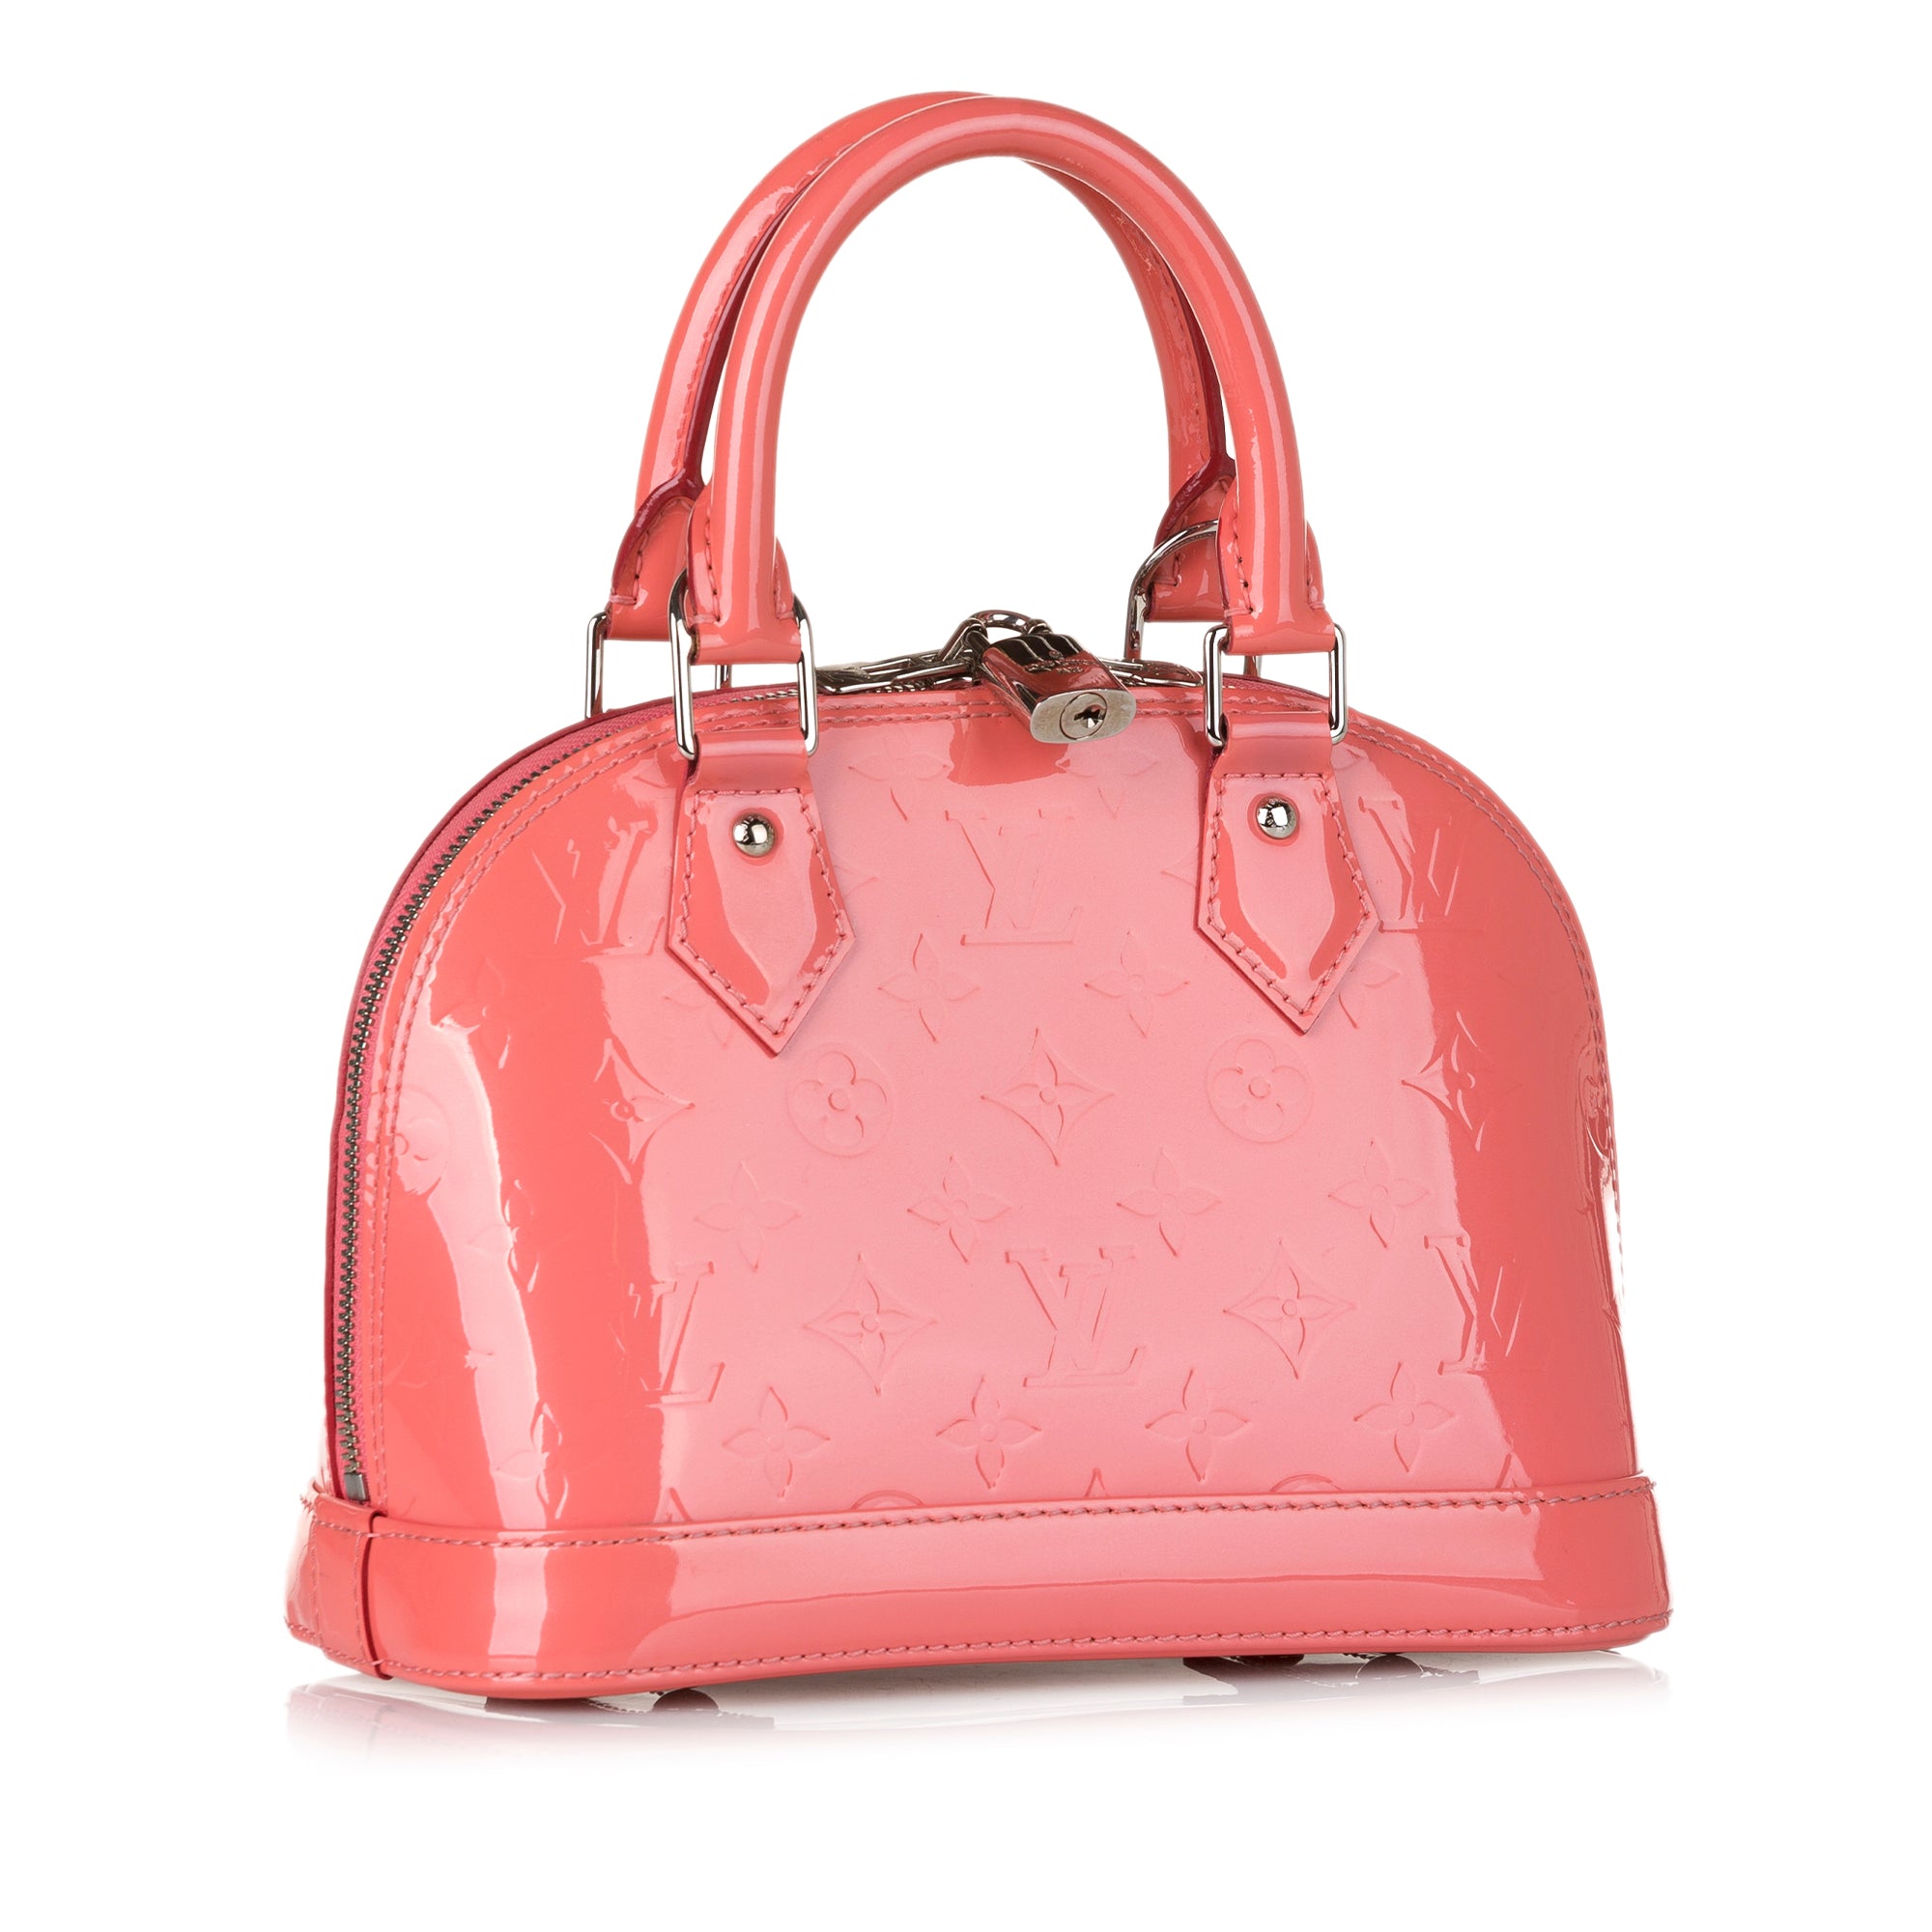 PRELOVED Louis Vuitton Pink Vernis Alma BB Bag SD5105 070723